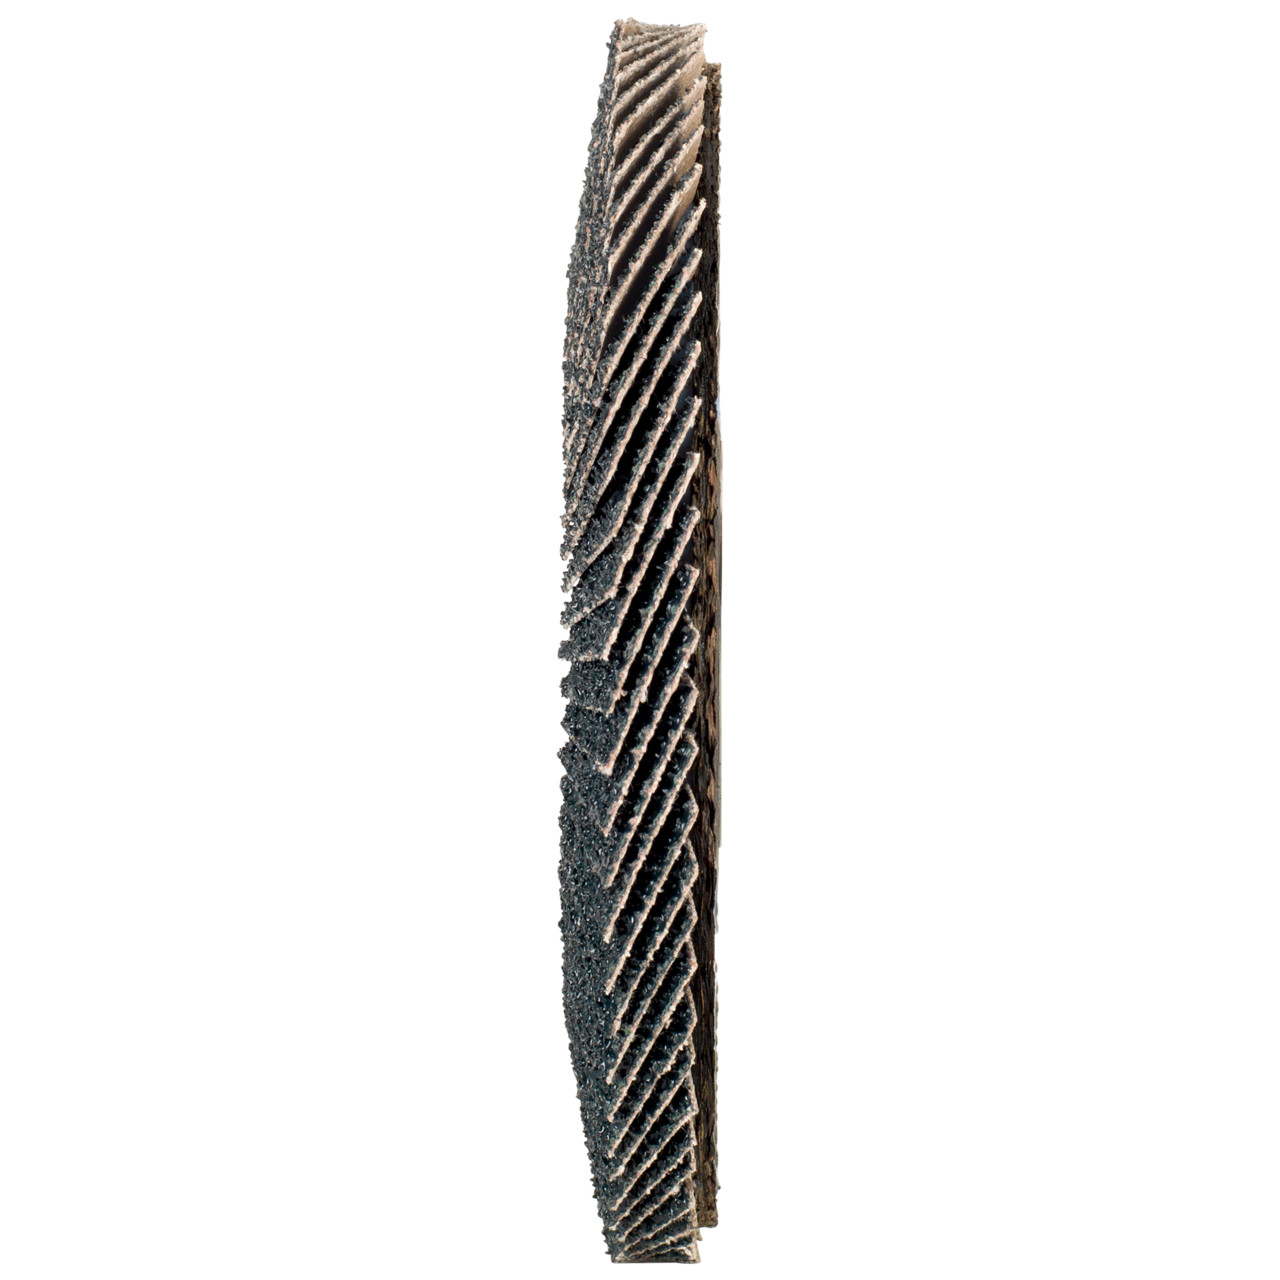 Rondella dentata Tyrolit DxH 150x22.2 2in1 per acciaio e acciaio inox, P120, forma: 27A - versione a gomito (versione con corpo portante in fibra di vetro), Art. 519215